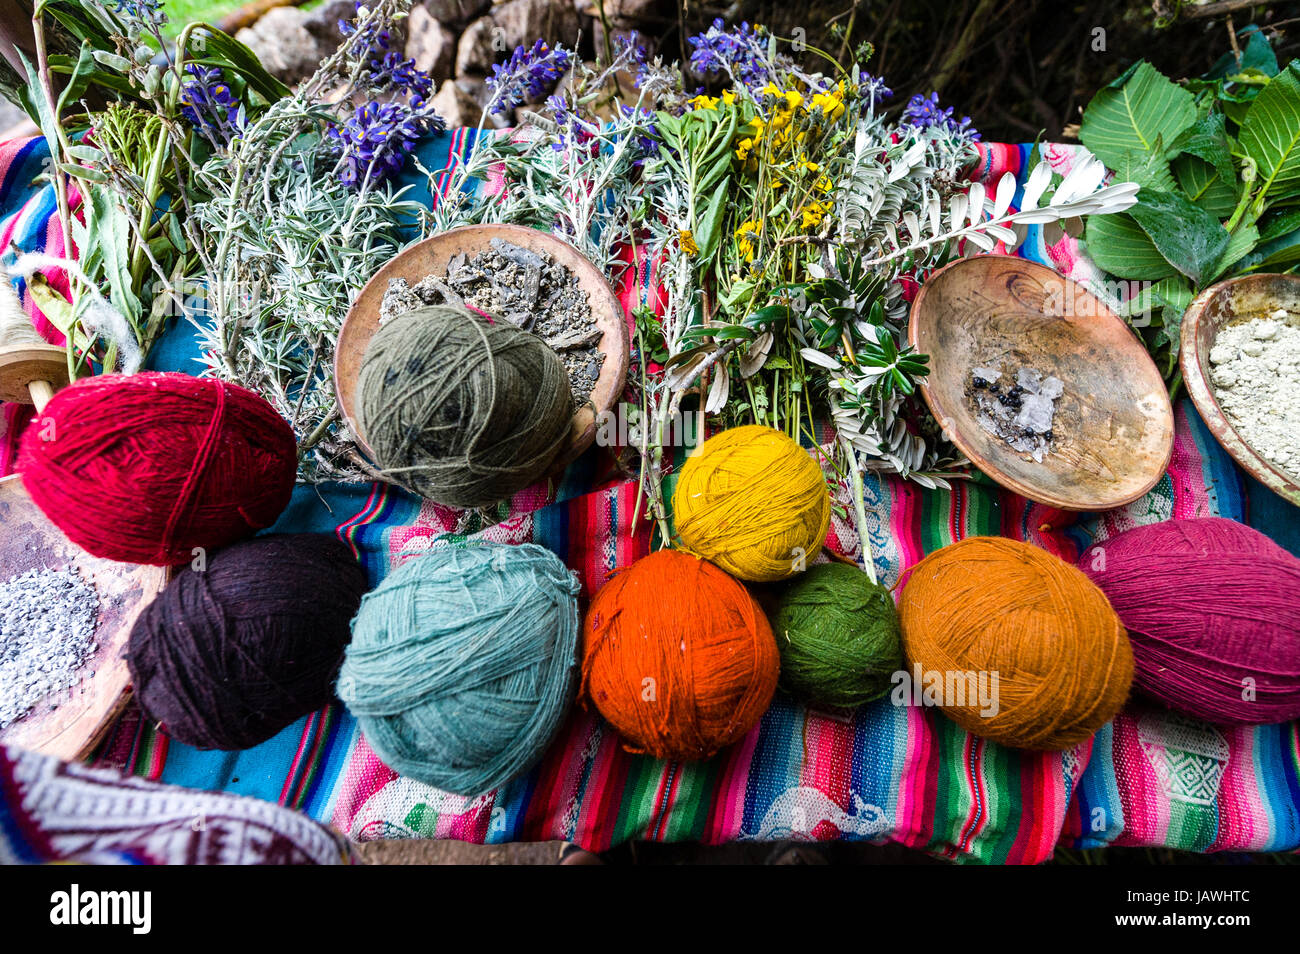 Amaru persone utilizzando coloranti naturali di colore la lana di ovini per fare palline di filato. Foto Stock